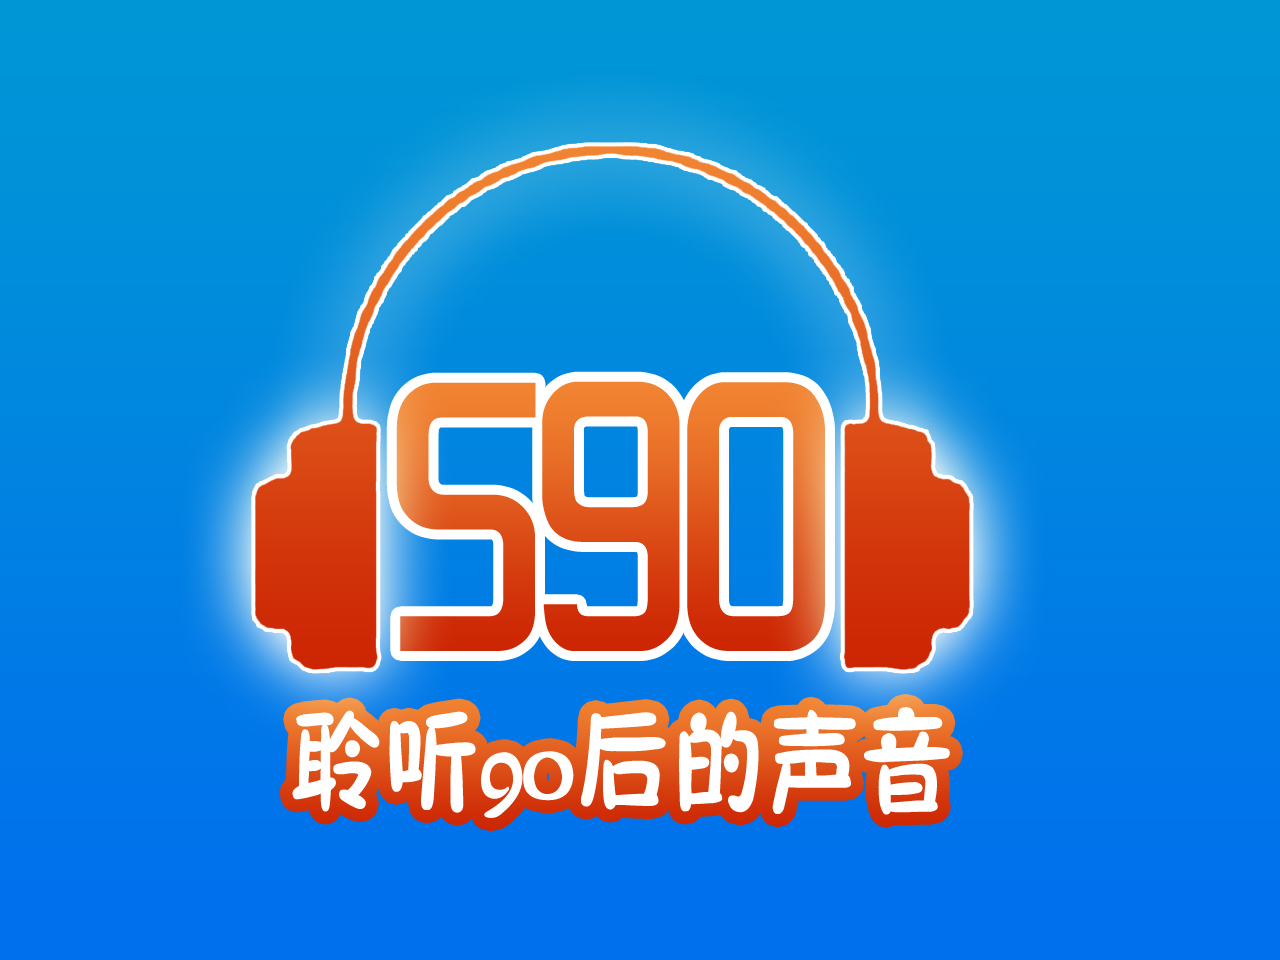 590之聲(官方電台)